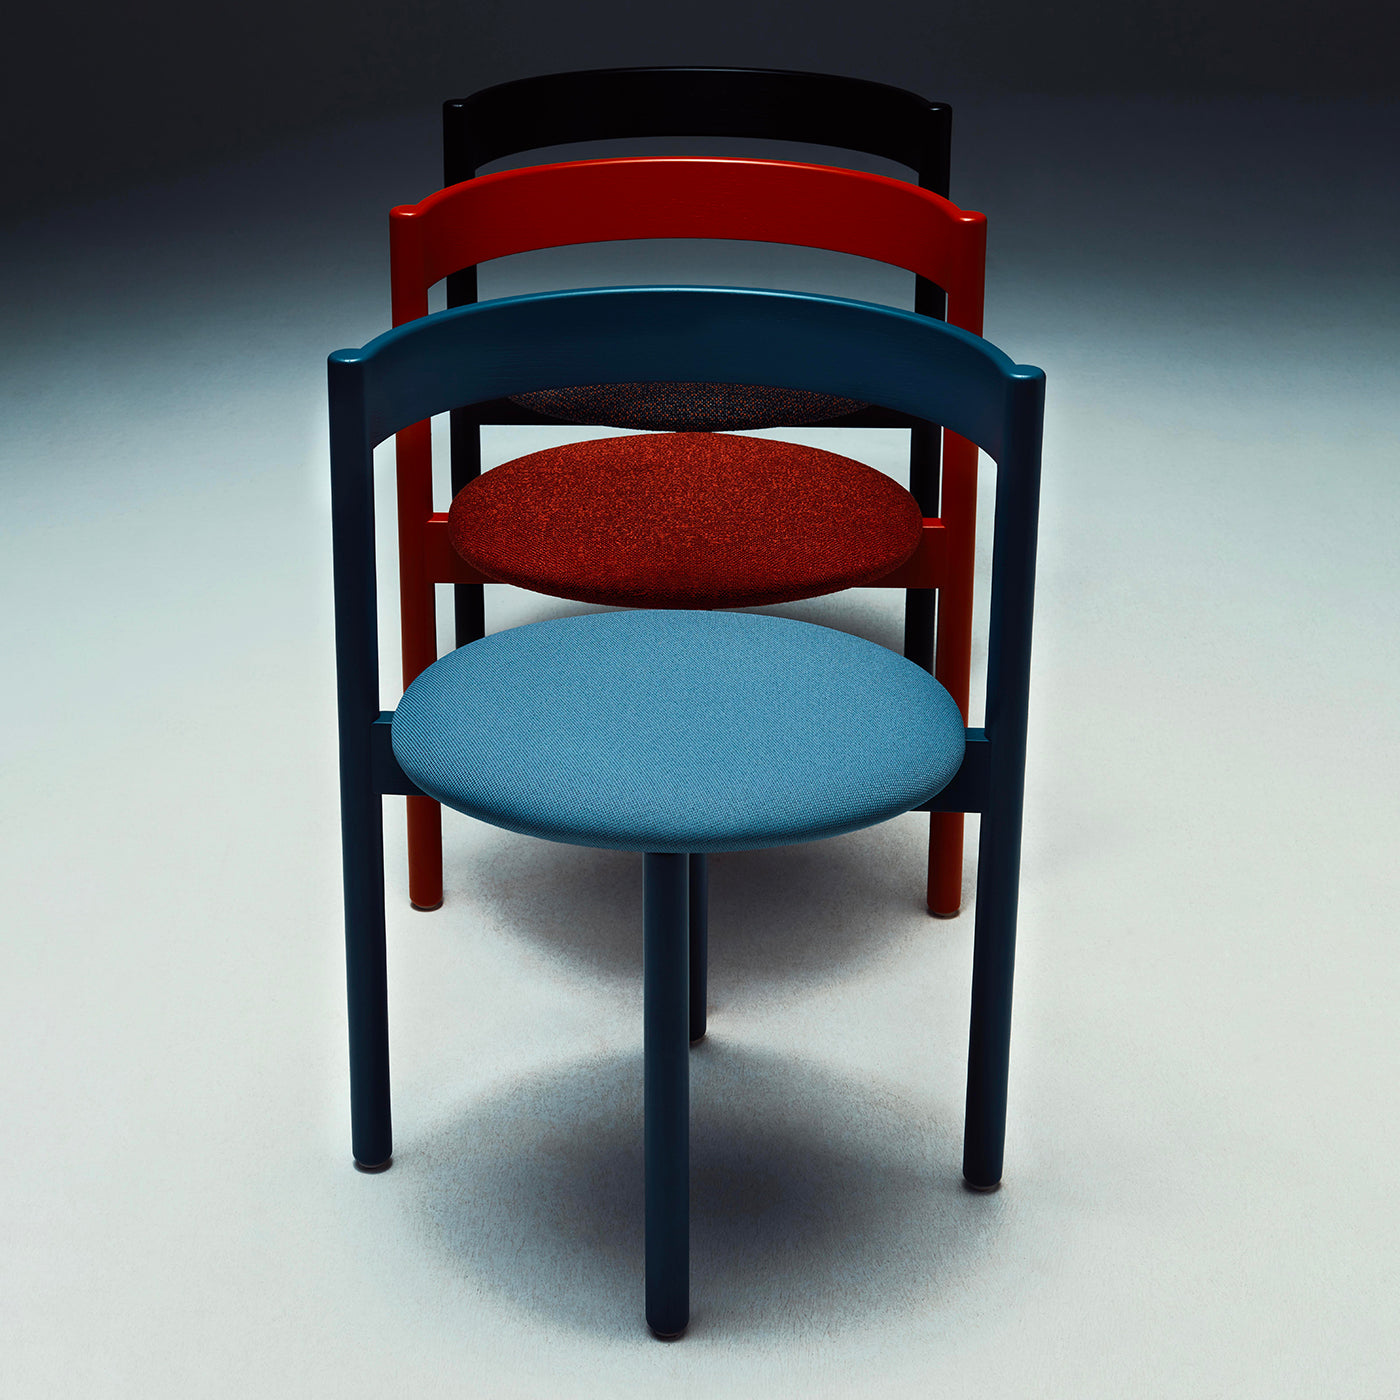 April Chair by Neri&Hu - Alternative view 1